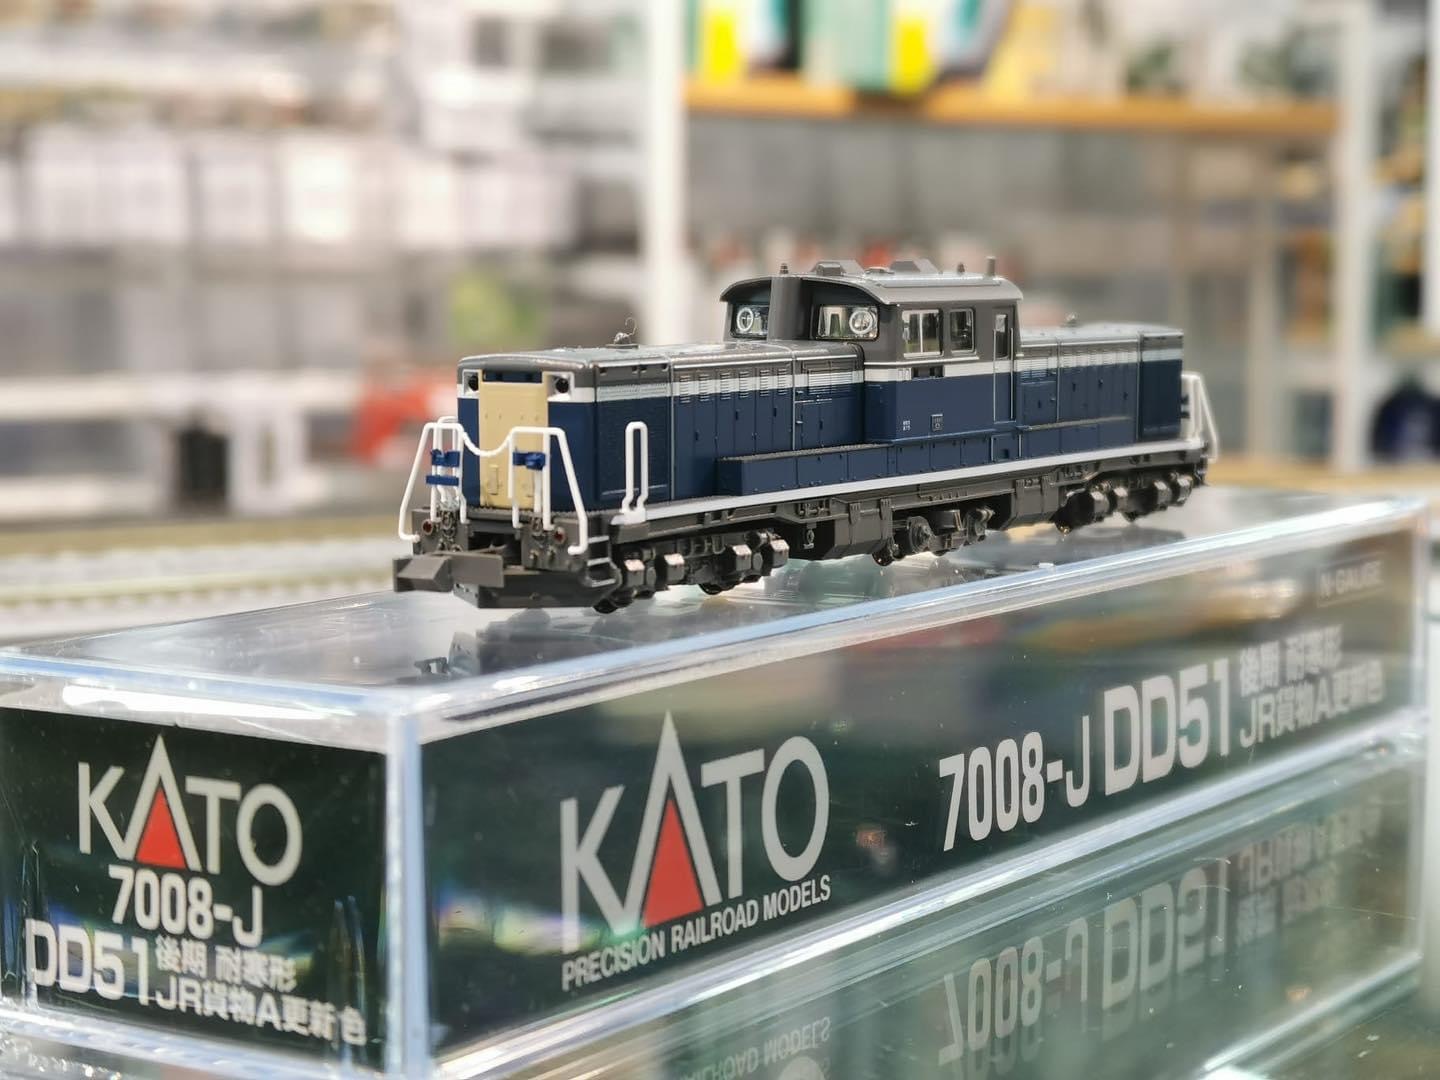 KATO 7008-J DD51 後期耐寒形JR 貨物A 更新色火車模型機頭- Khaho Store 咔好鐵道模型店